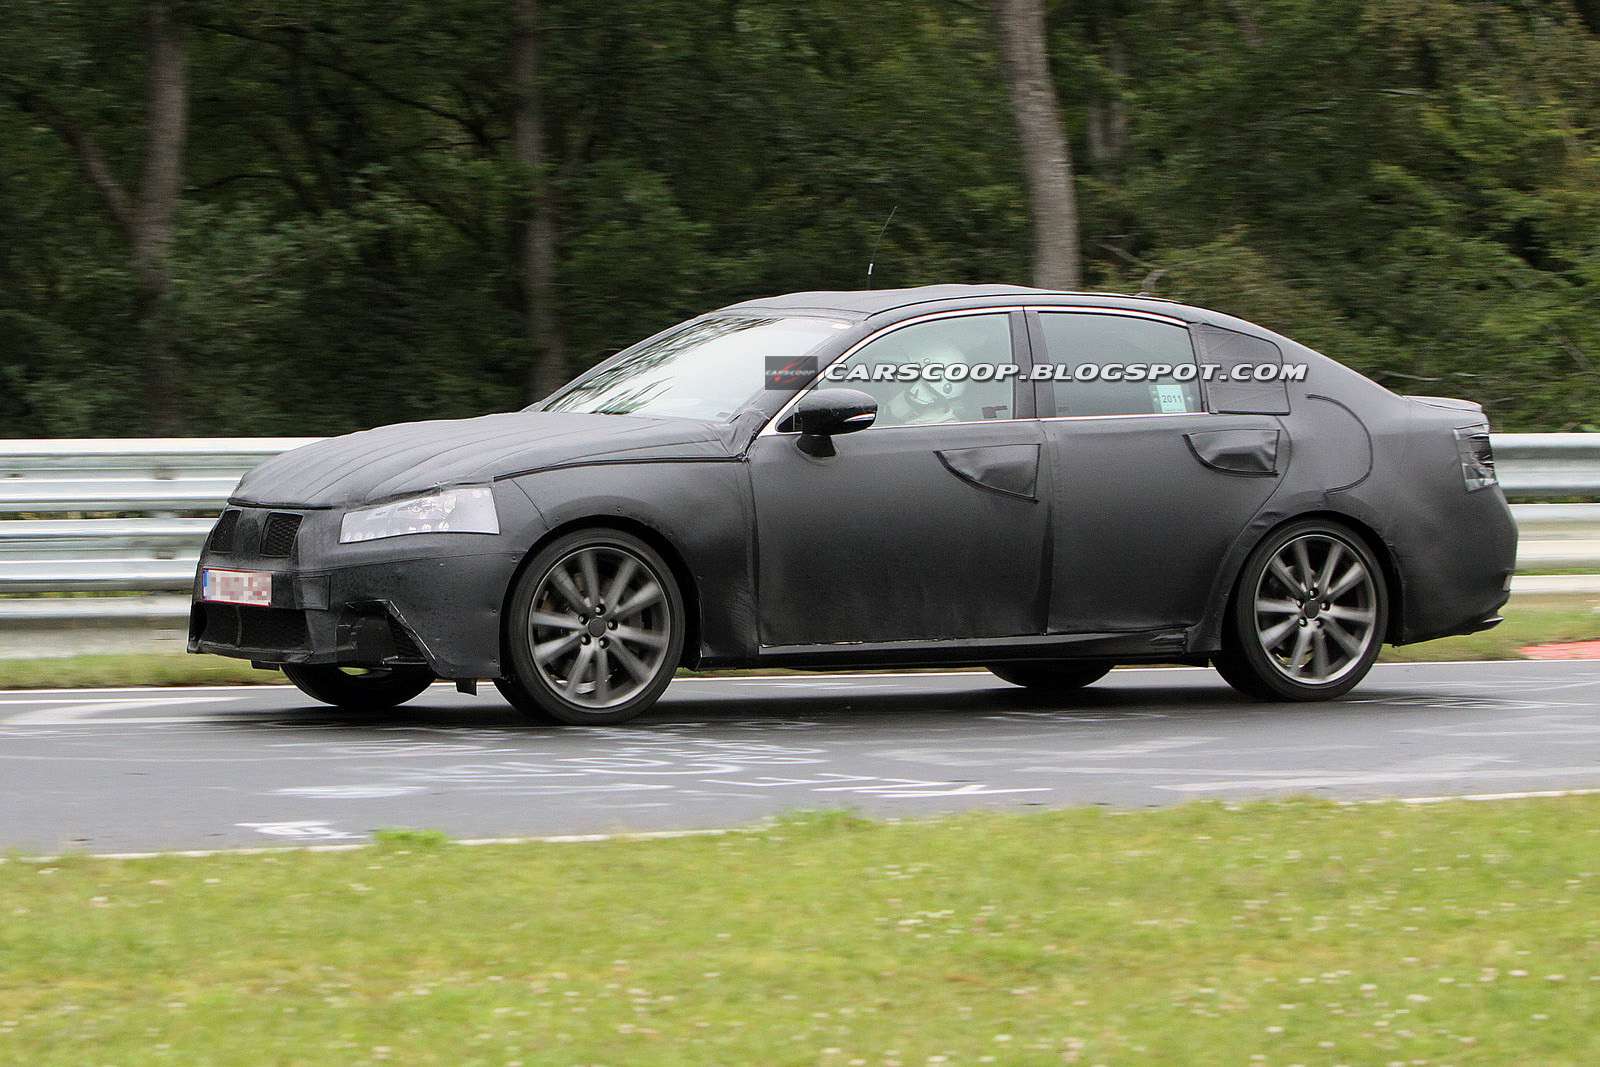 Lexus GS 2013 fot szpieg lipiec 2011